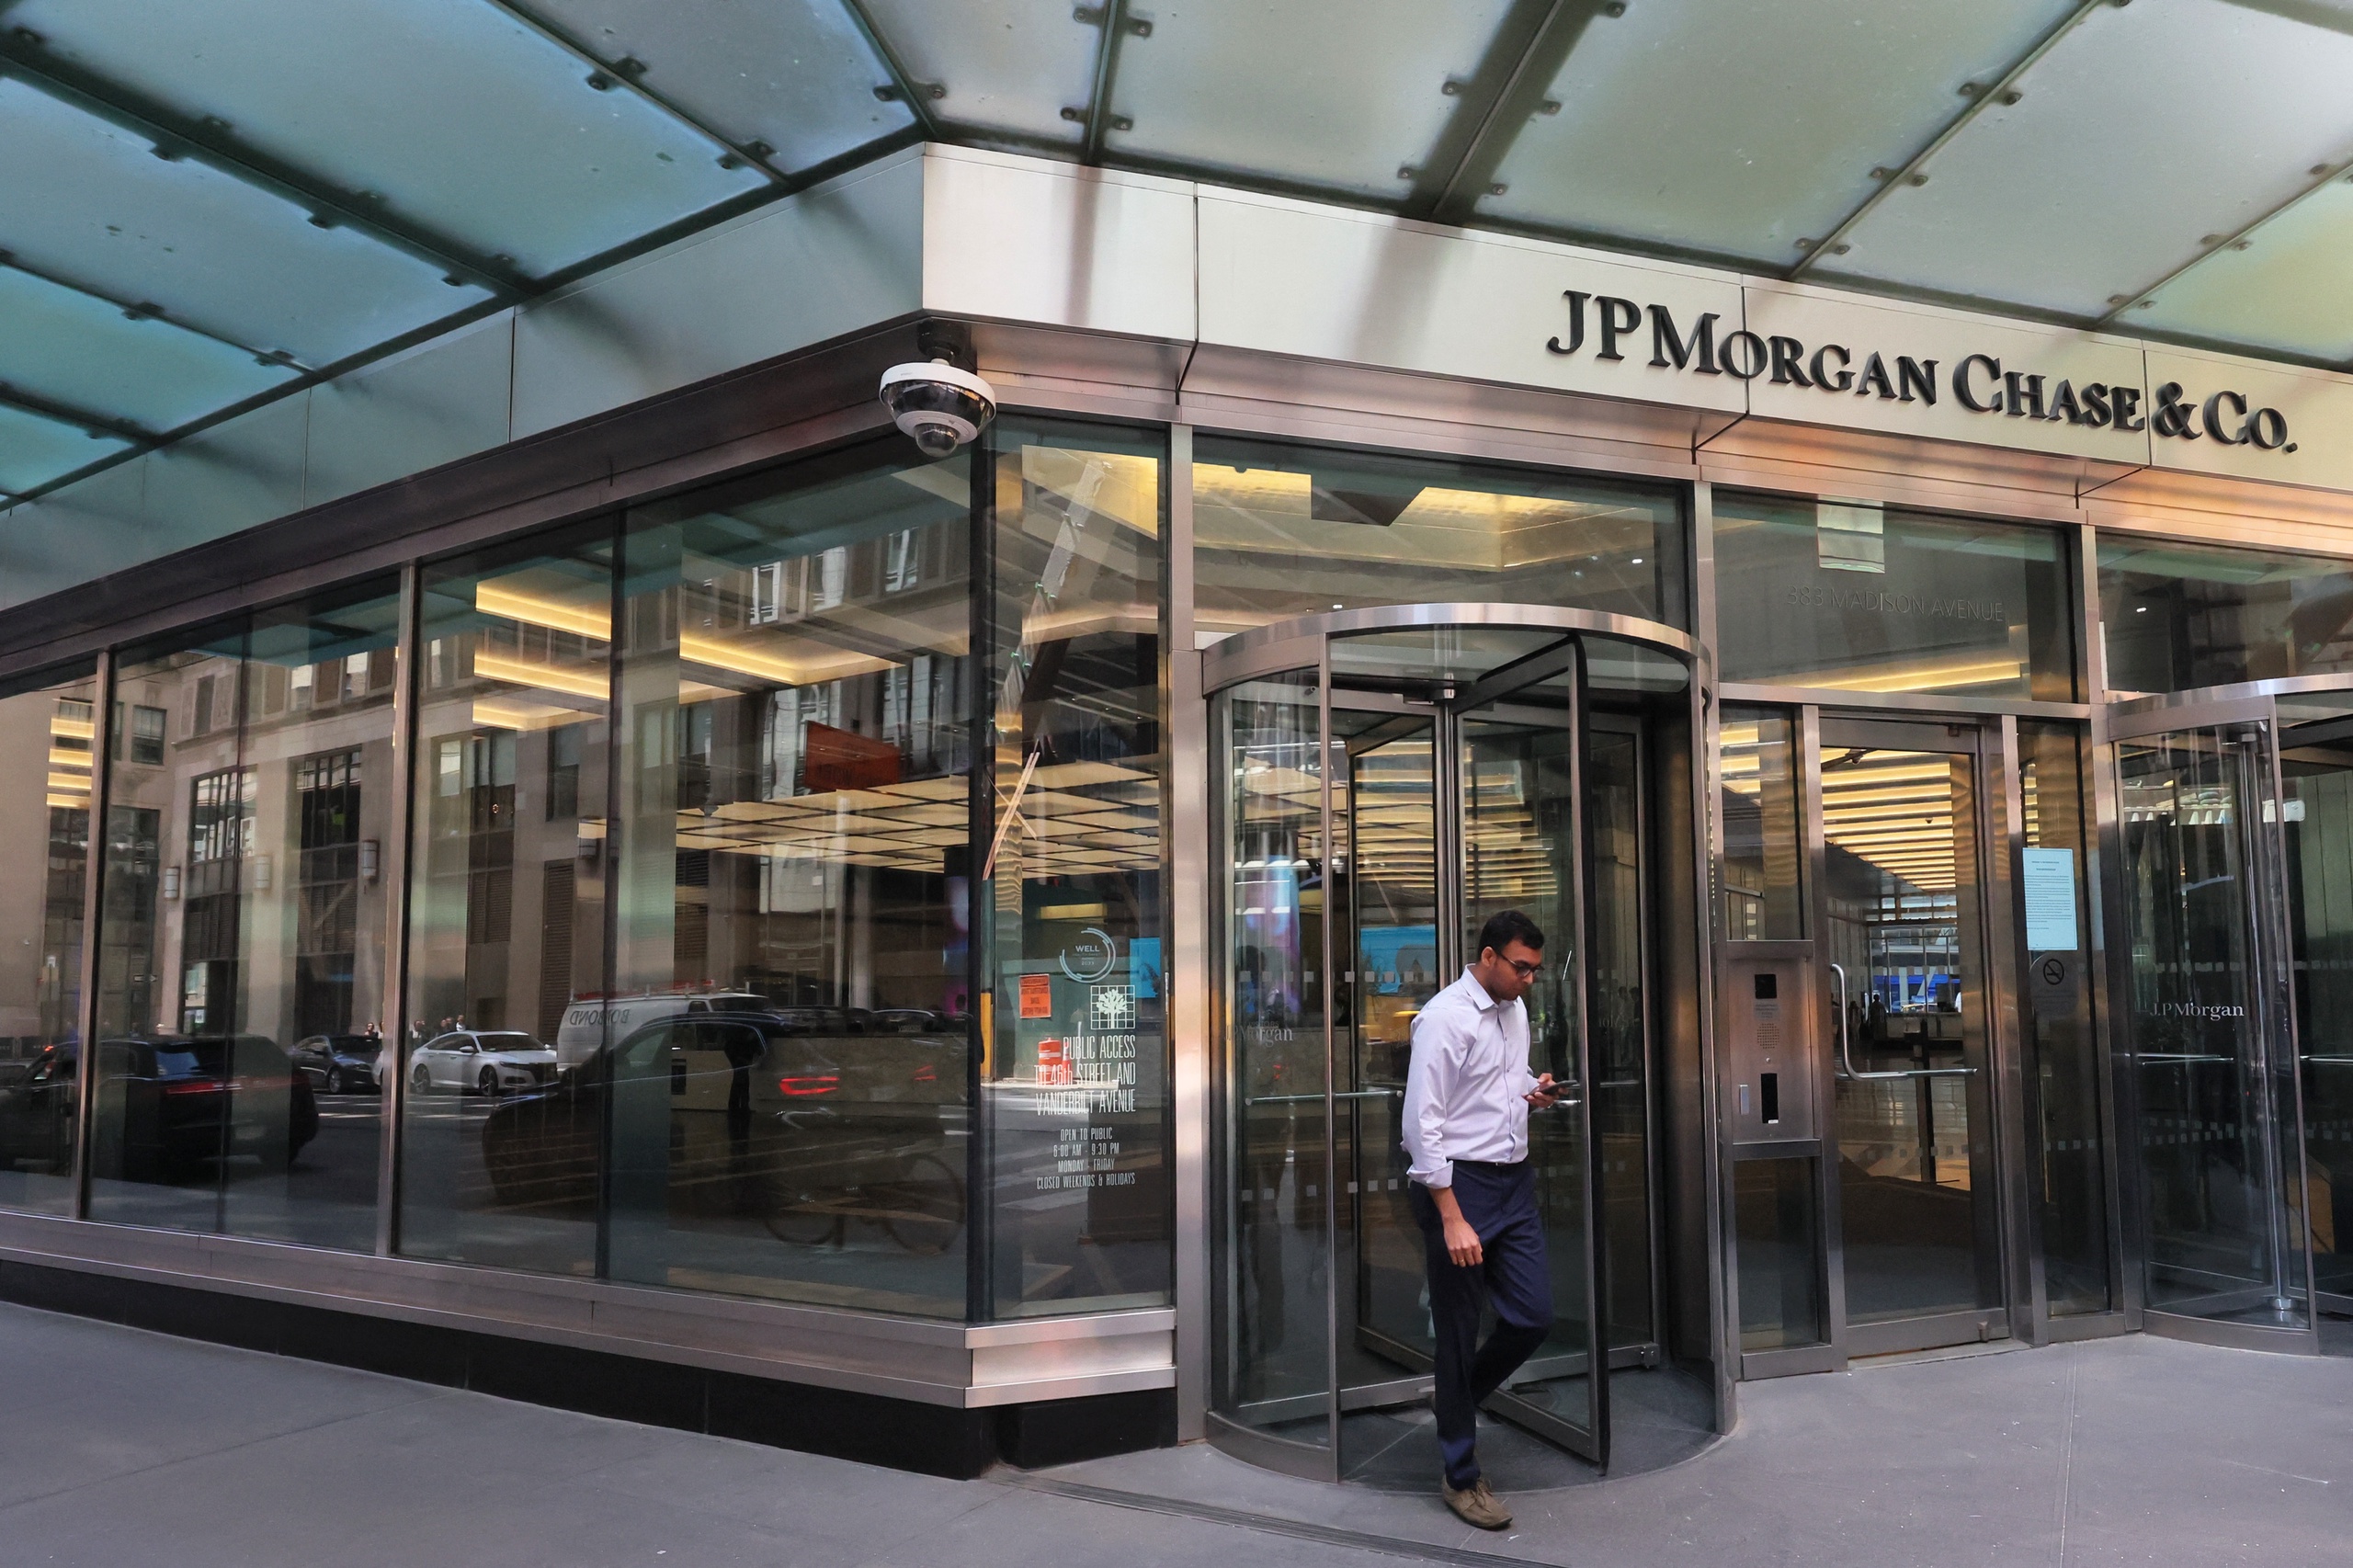 Waar de medewerkers van de omgevallen bank First Republic Bank nog geen maand geleden overgingen naar JPMorgan Chase, daar grijpt de nieuwe eigenaar nu al in. Duizend mensen worden ontslagen, wat betekent dat één op de zeven bankiers op zoek moet naar een nieuwe werkgever.